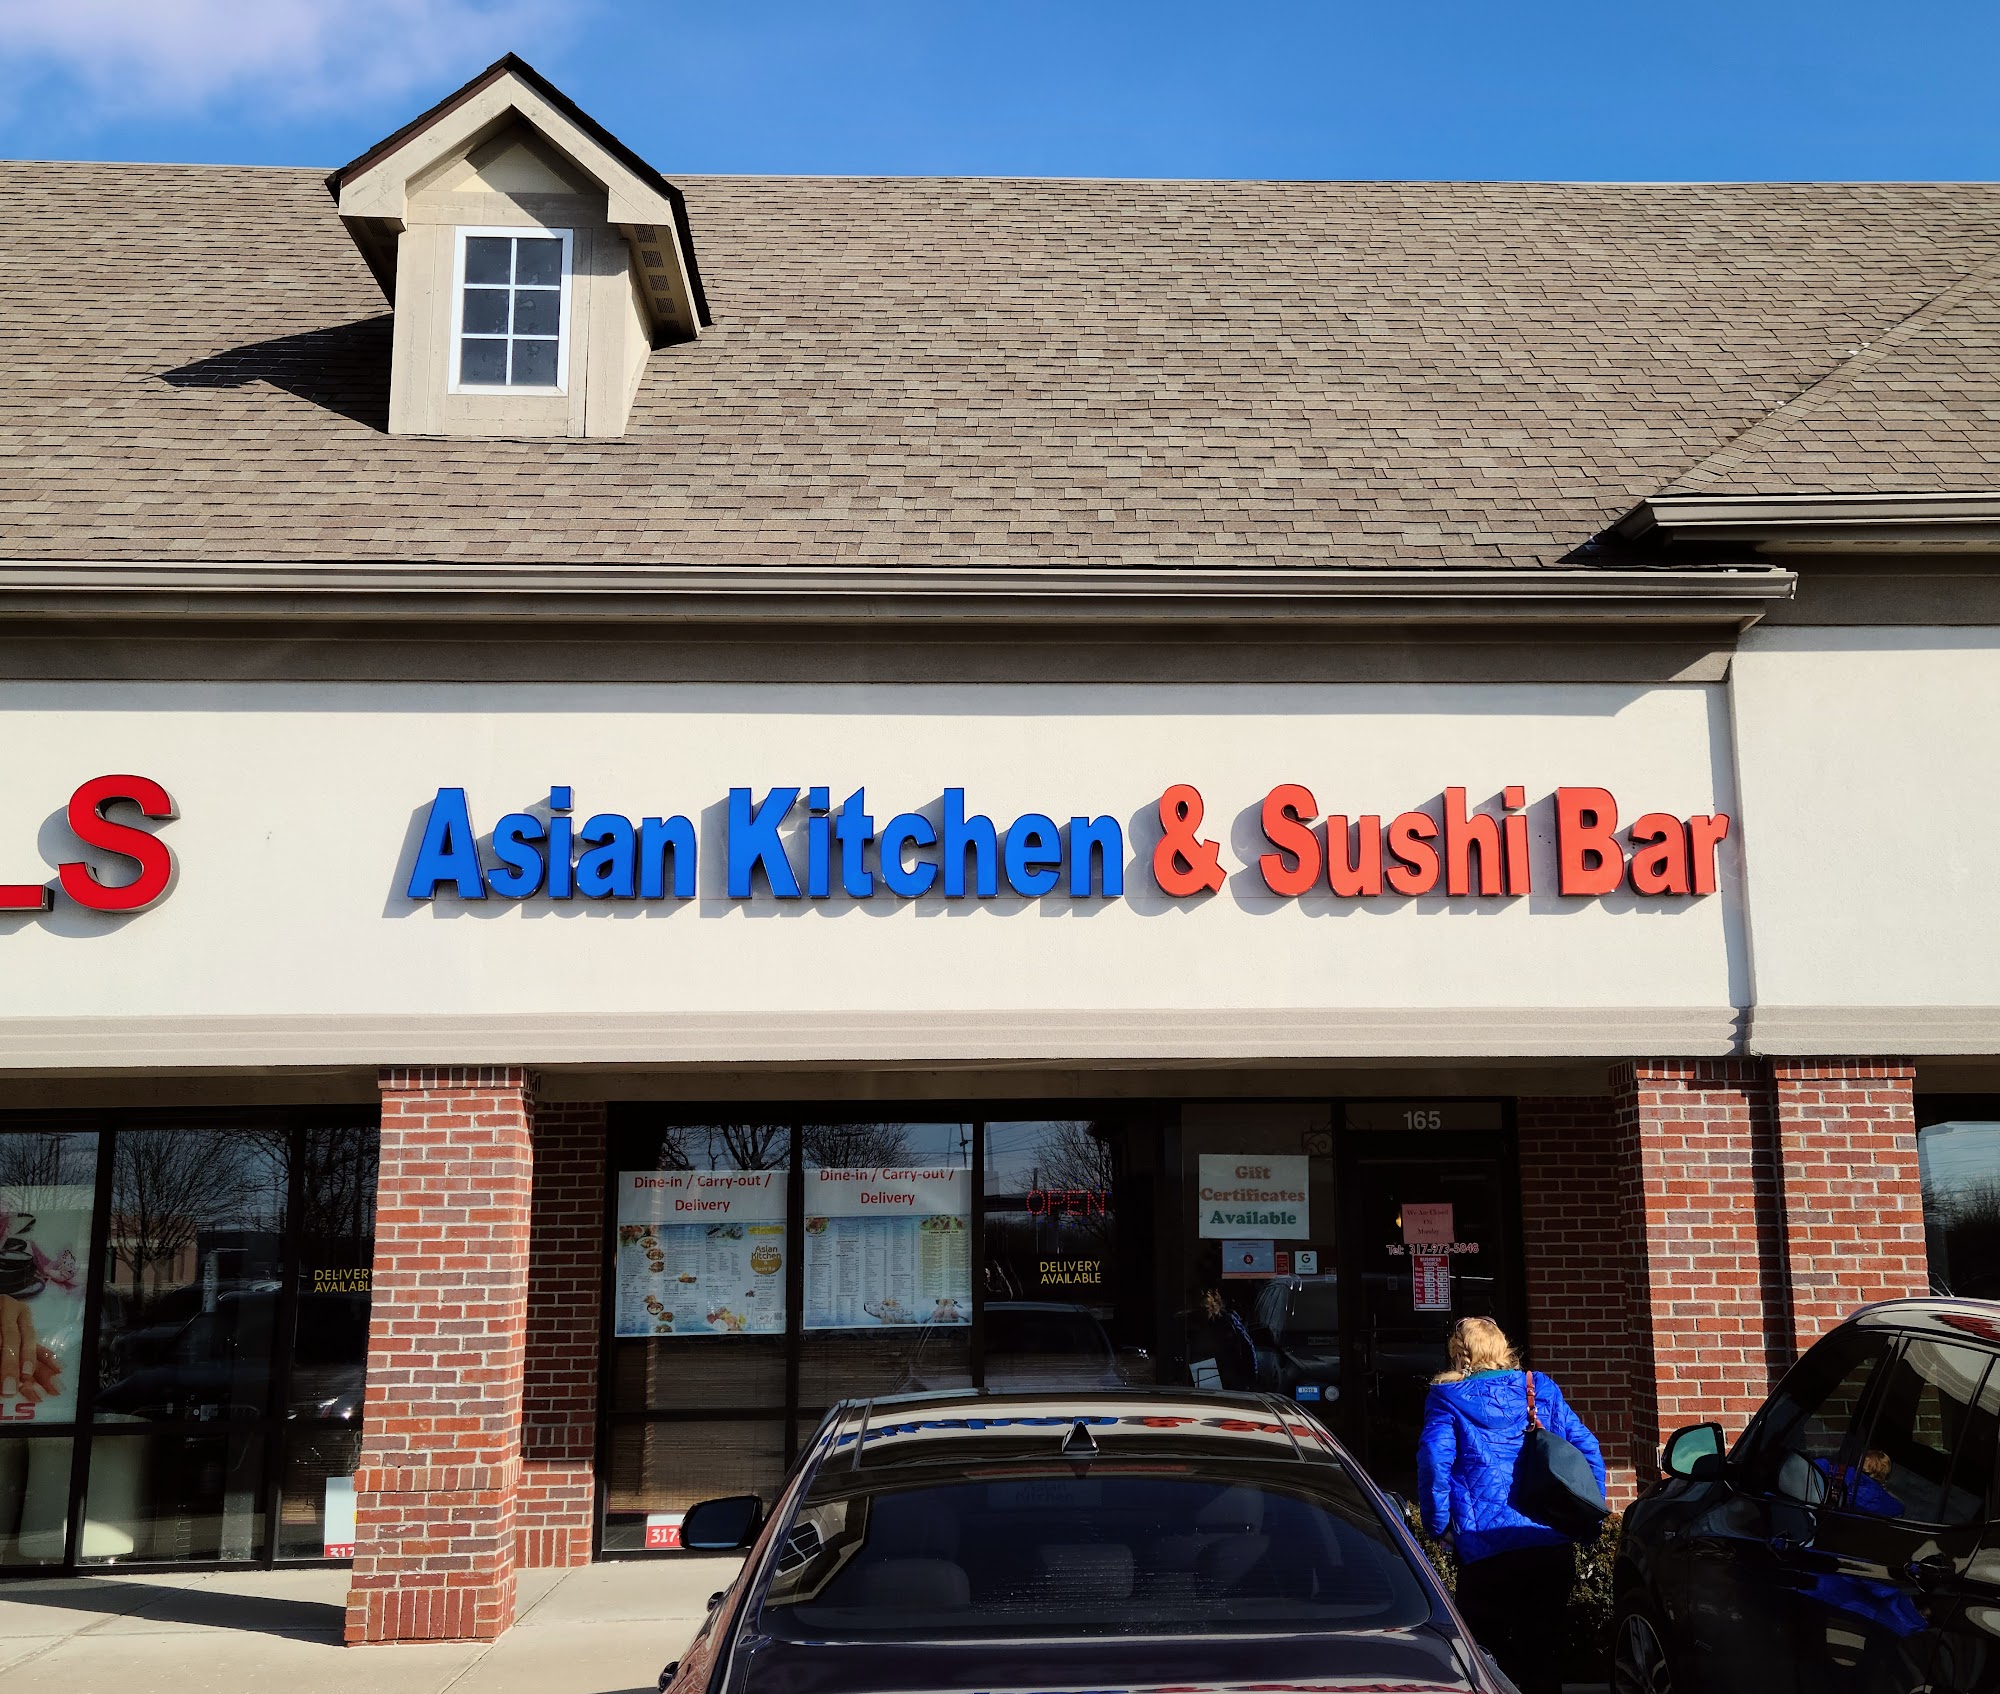 Asian Kitchen & Sushi Bar